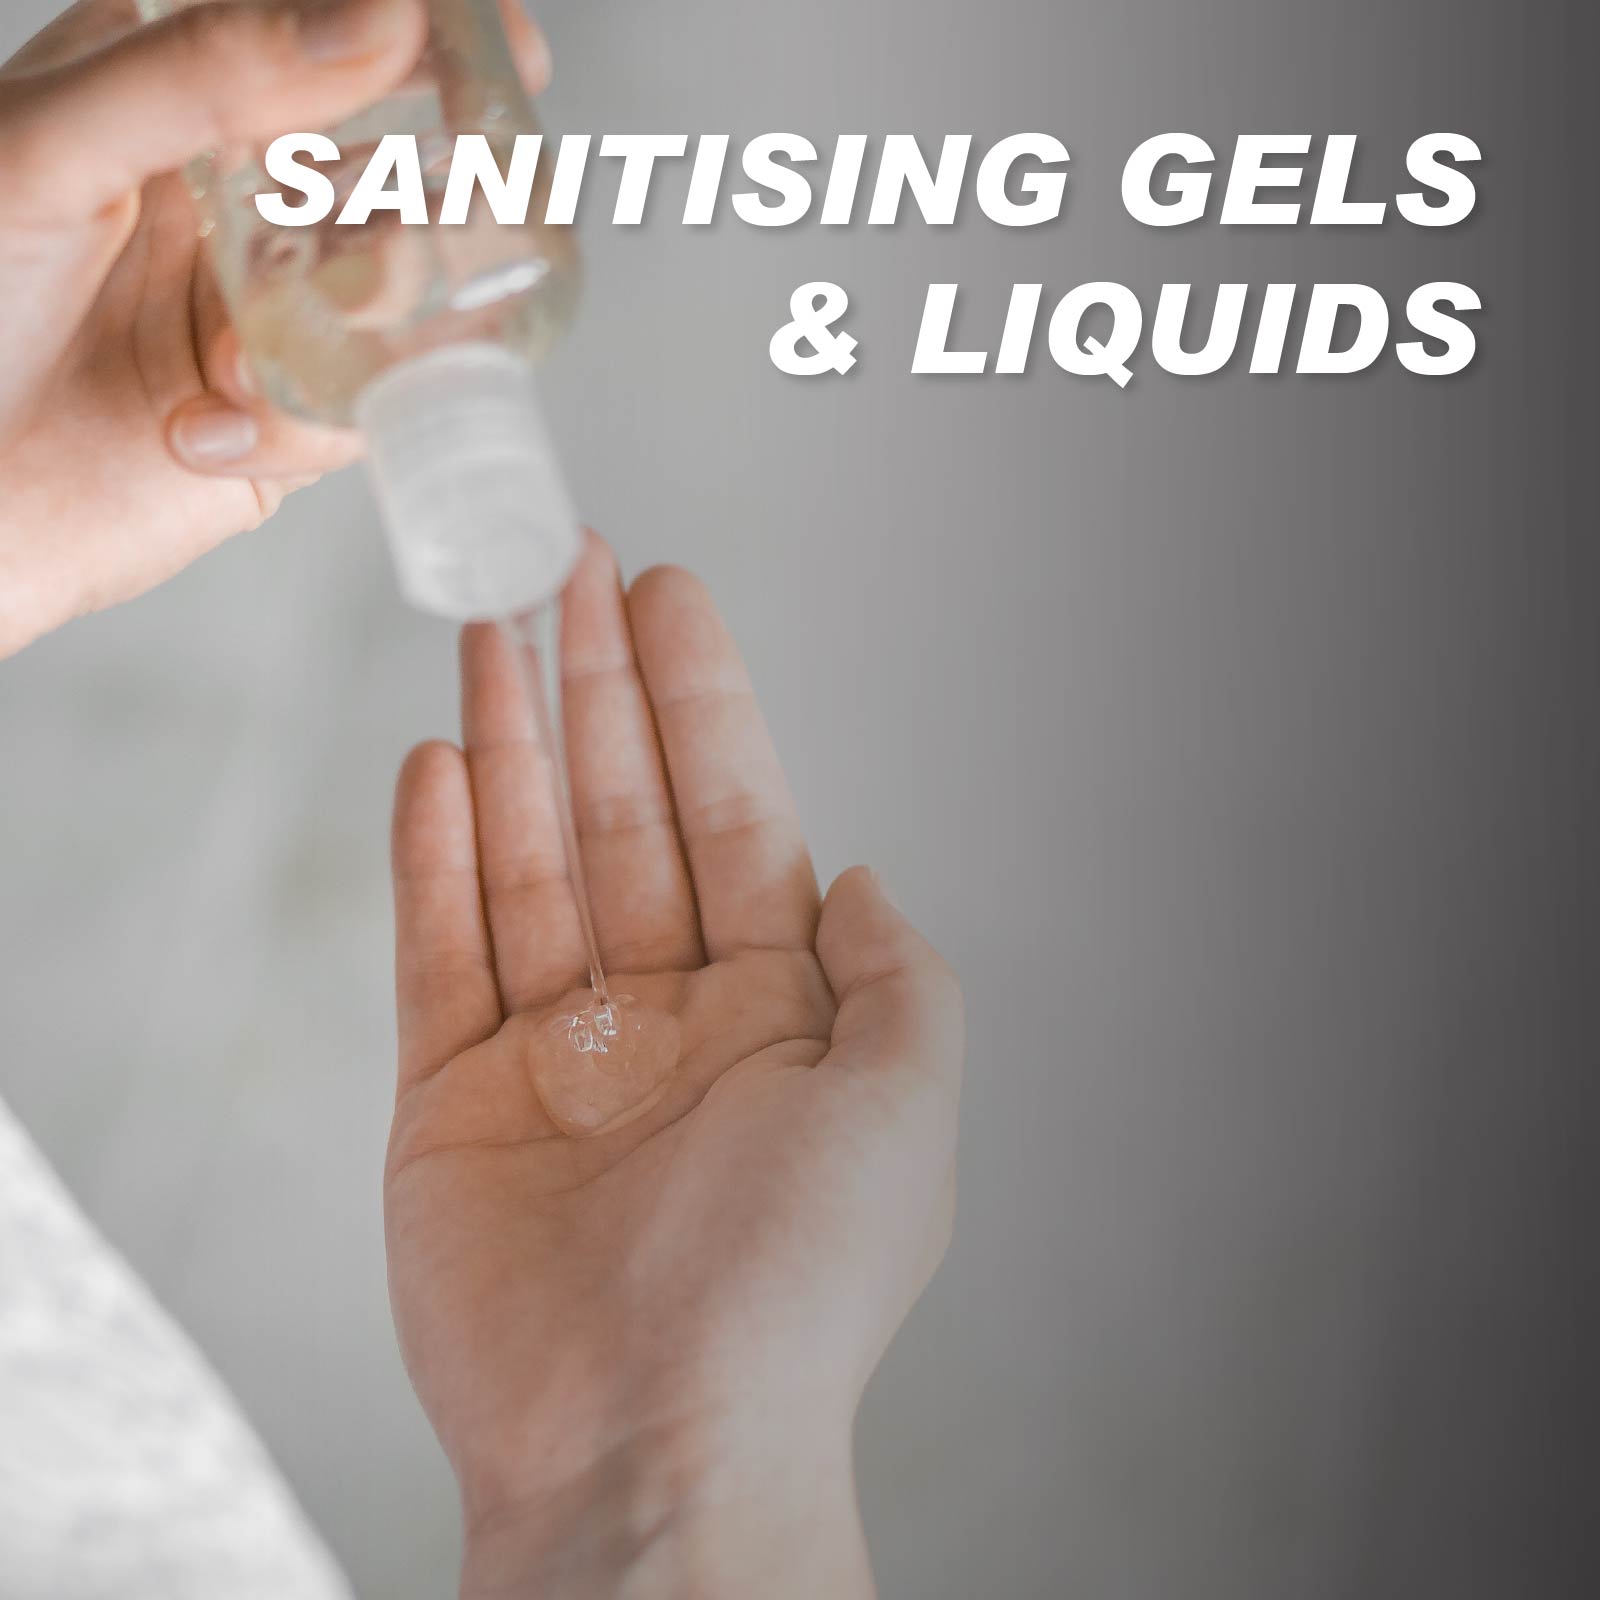 Sanitising Gels & Liquids